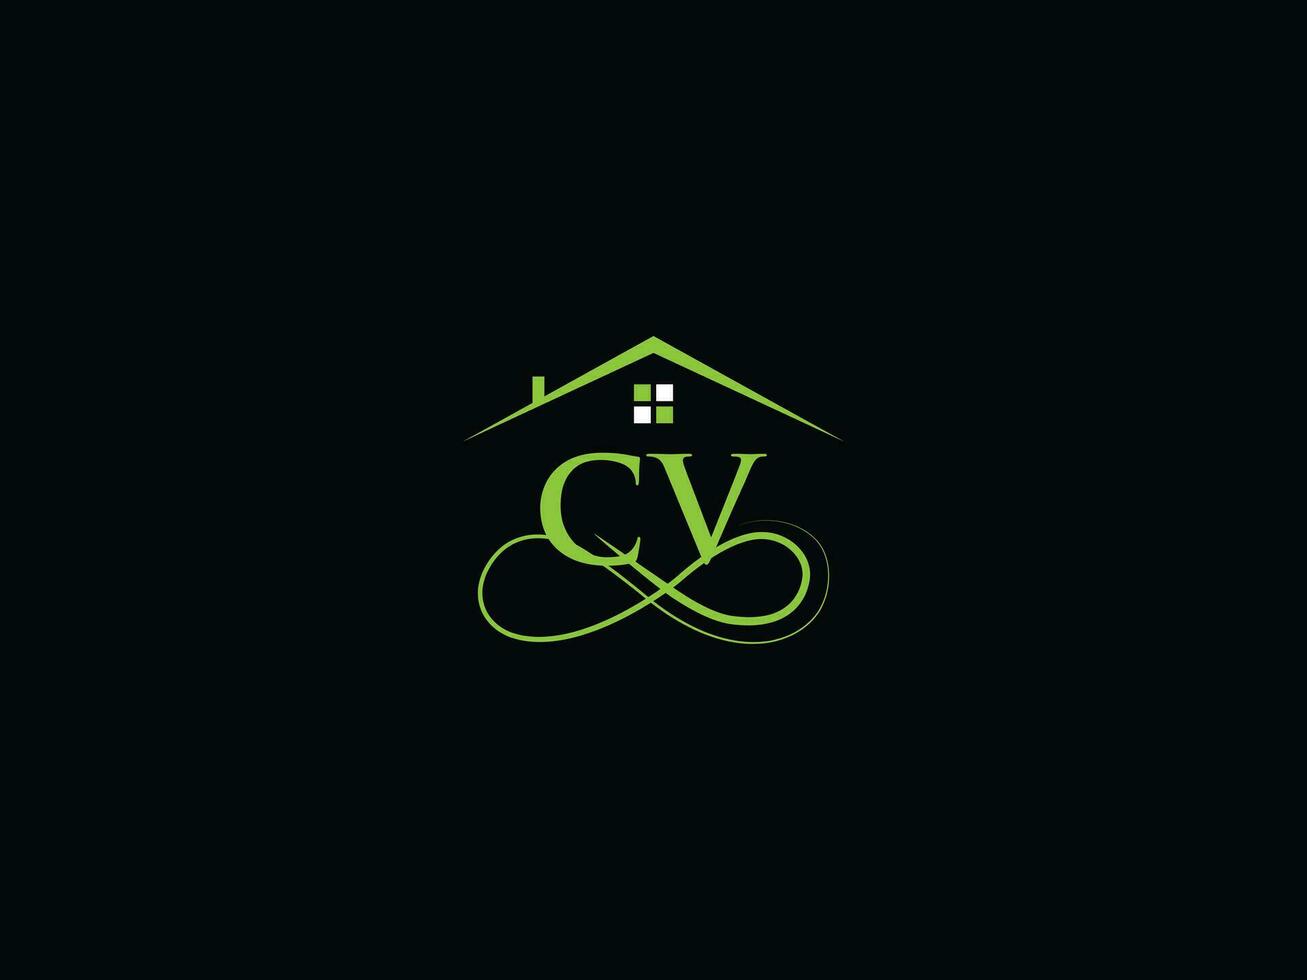 réel biens CV logo vecteur, luxe CV bâtiment logo pour affaires vecteur